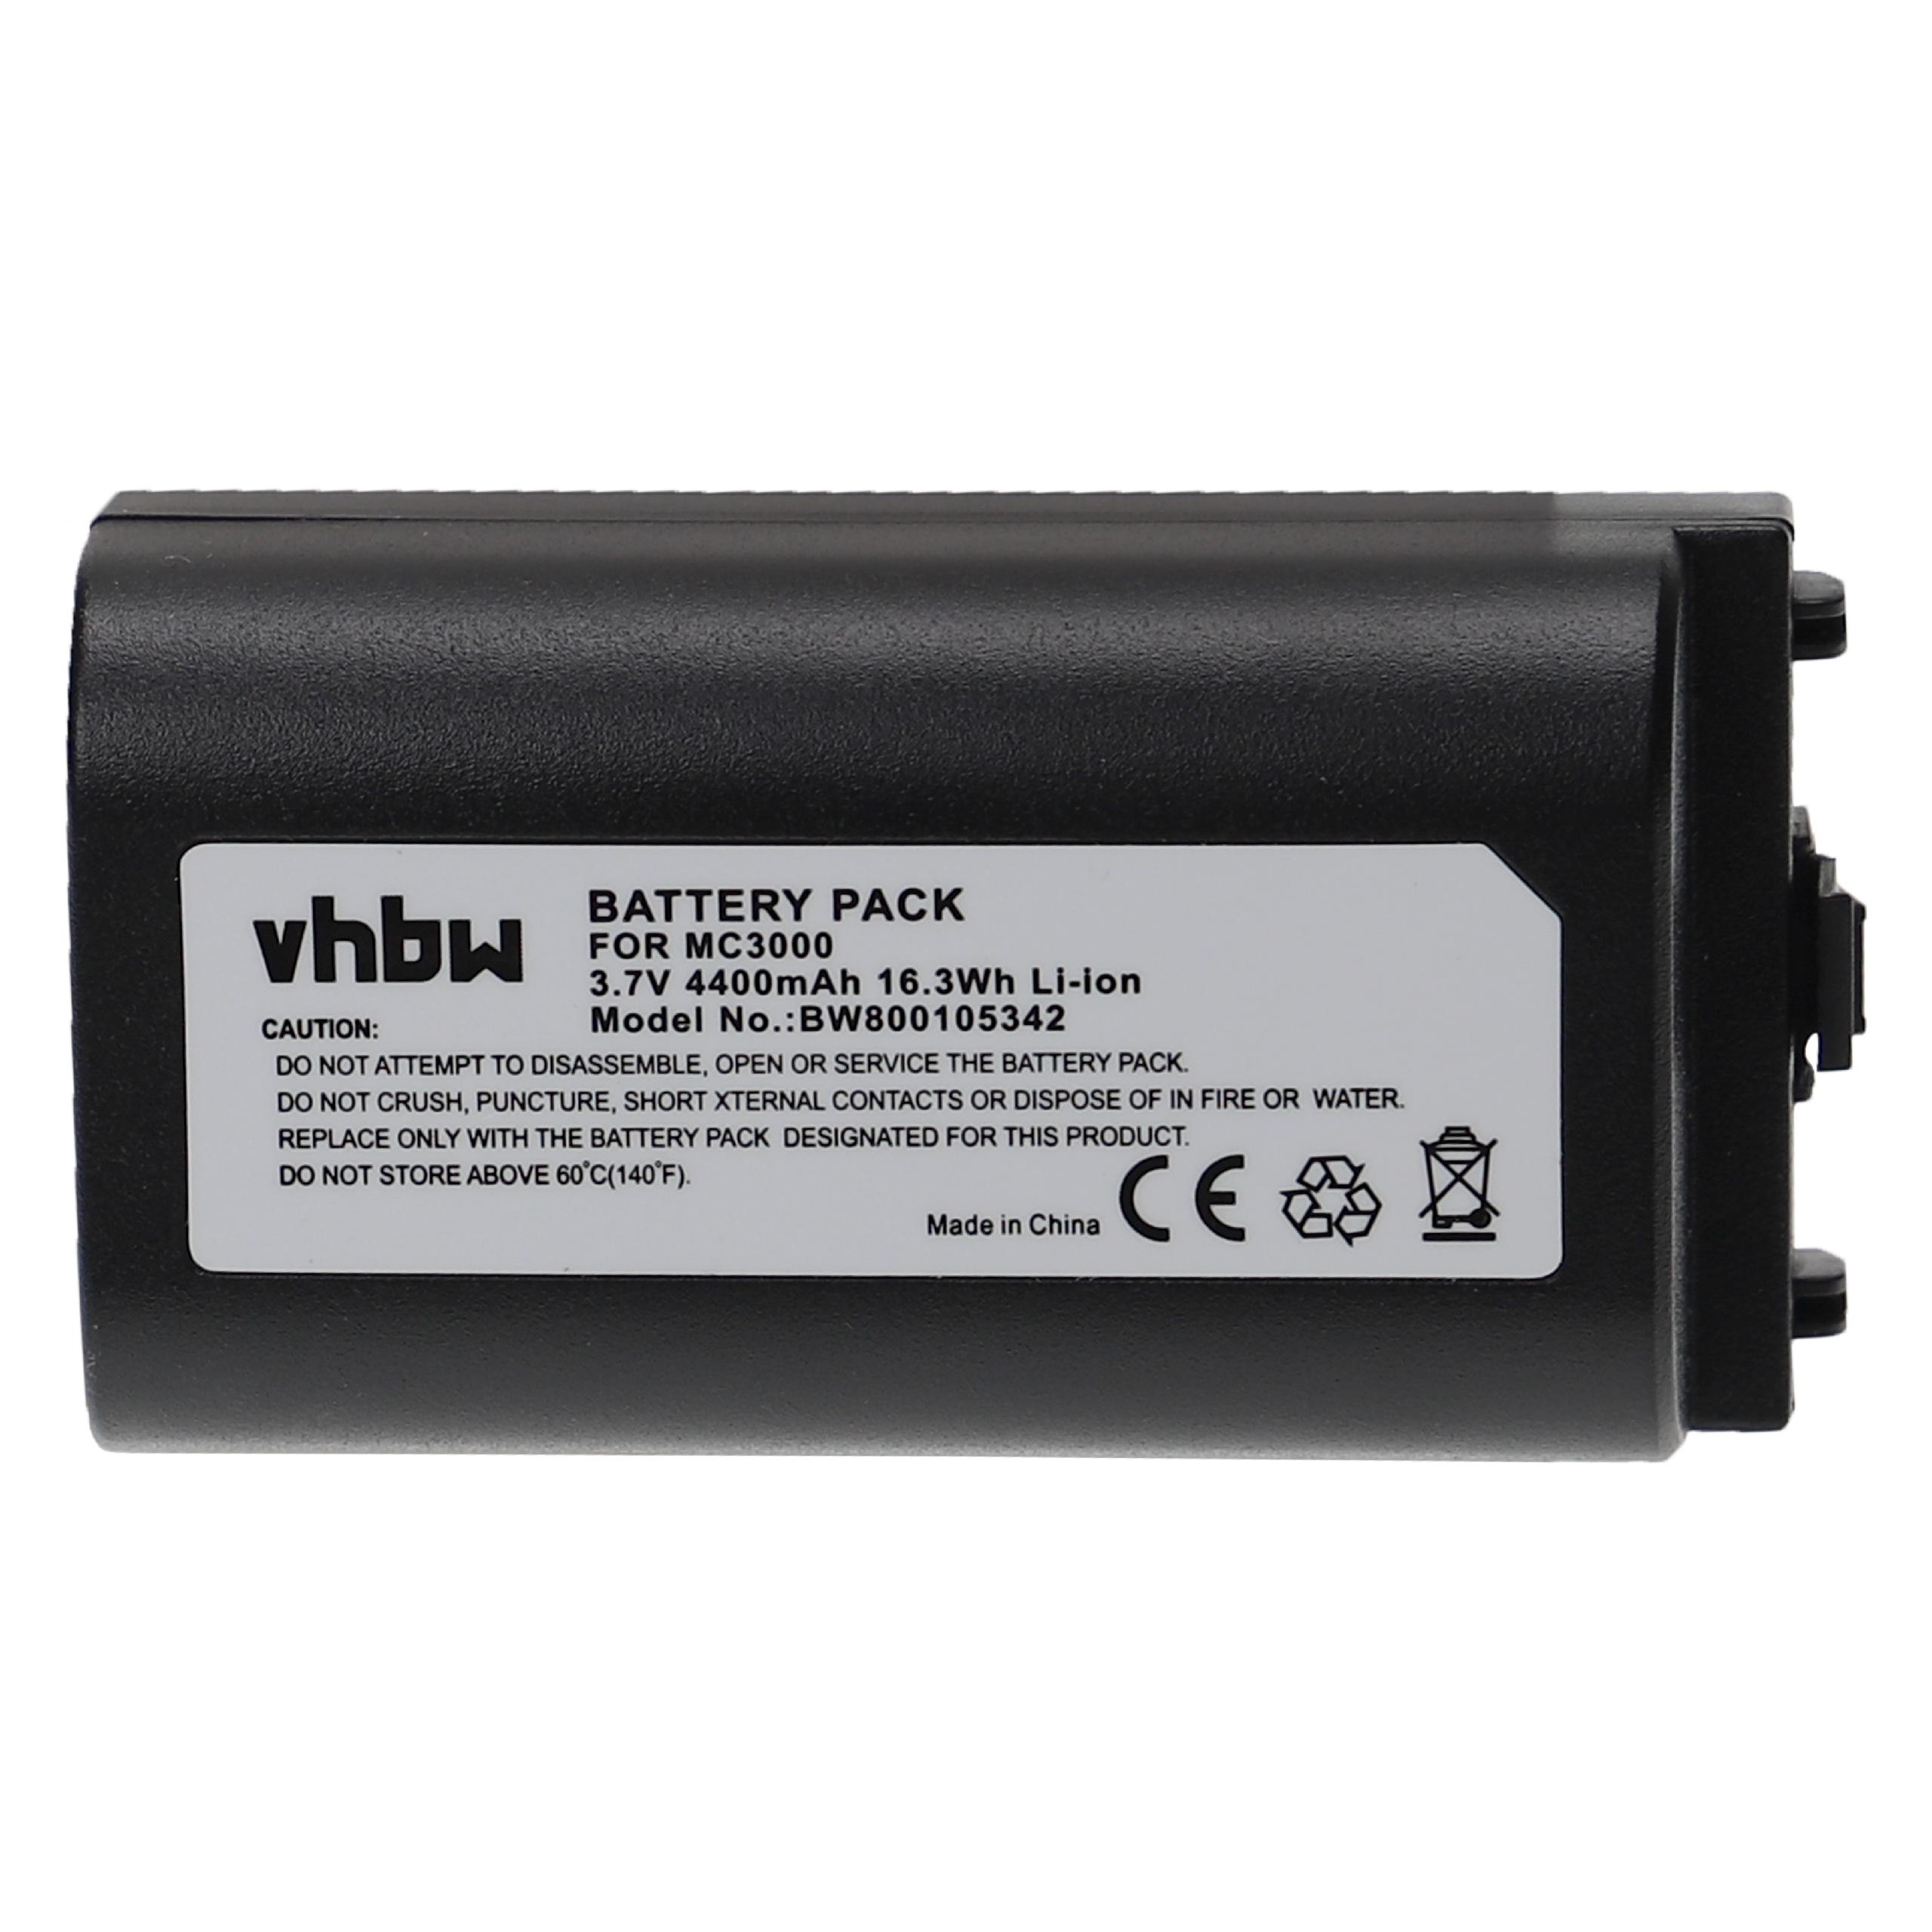 Batterie remplace Symbol 55-002148-01, 55-0211152-02 pour scanner de code-barre - 4400mAh 3,7V Li-ion